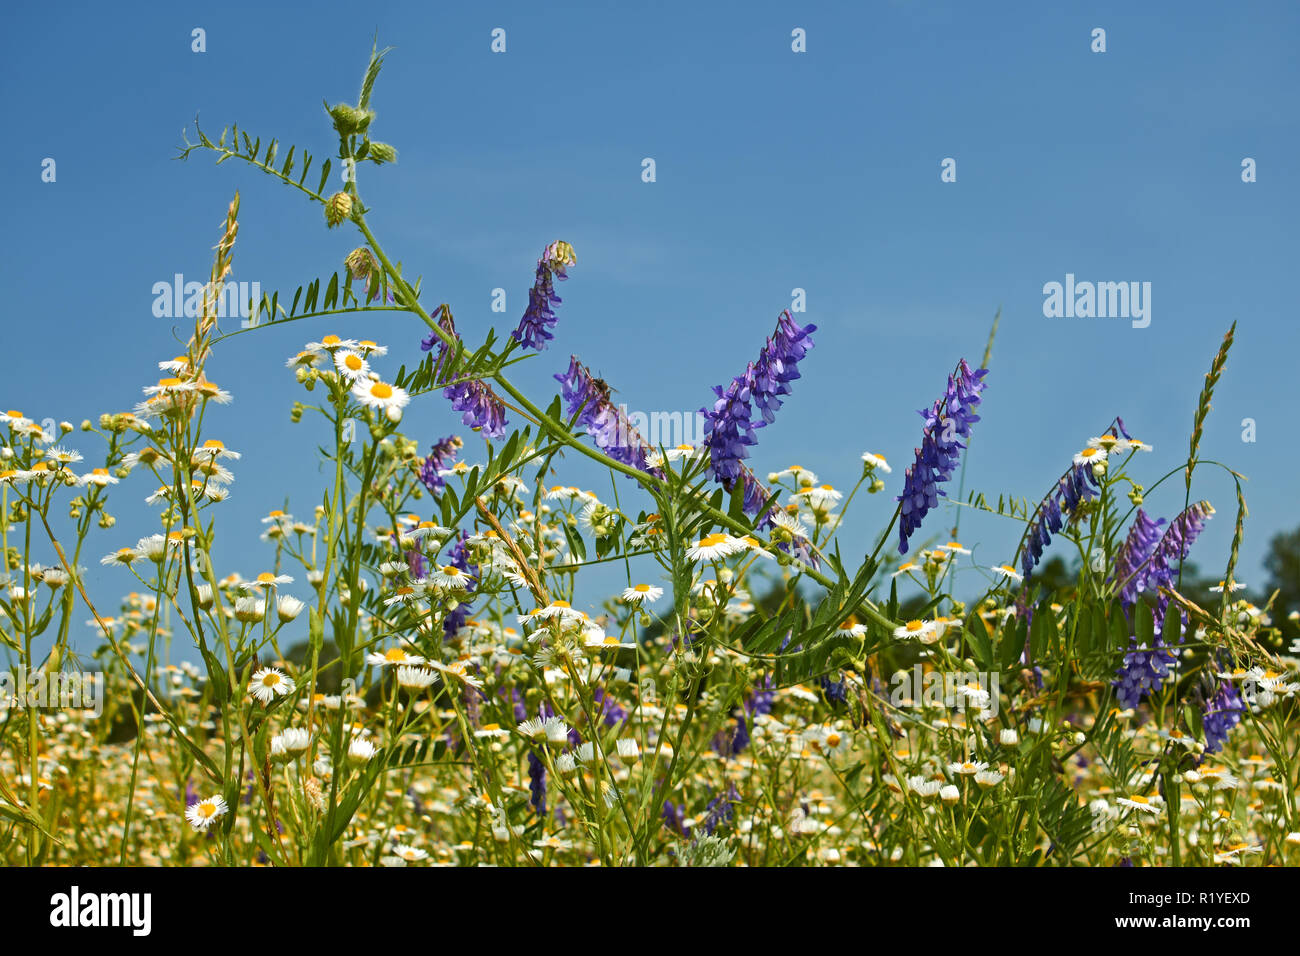 Floraison rapide de diverses graminées sauvages sur la motley fond de ciel bleu ensoleillé dans l'été Banque D'Images